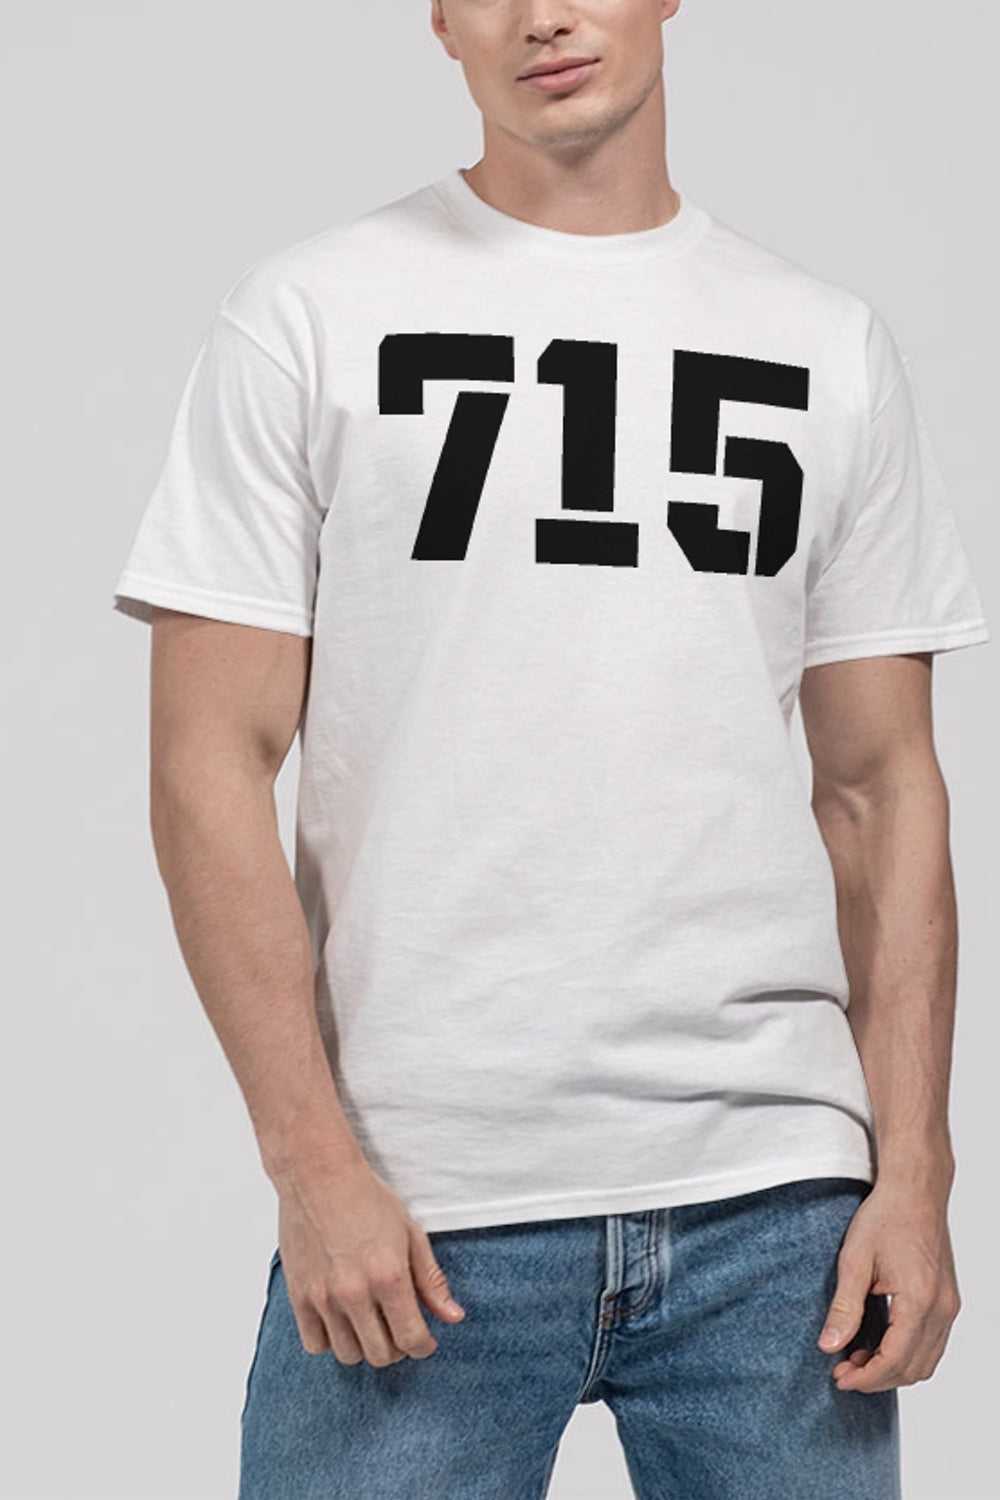 715 Crew Men's Classic T-Shirt OniTakai